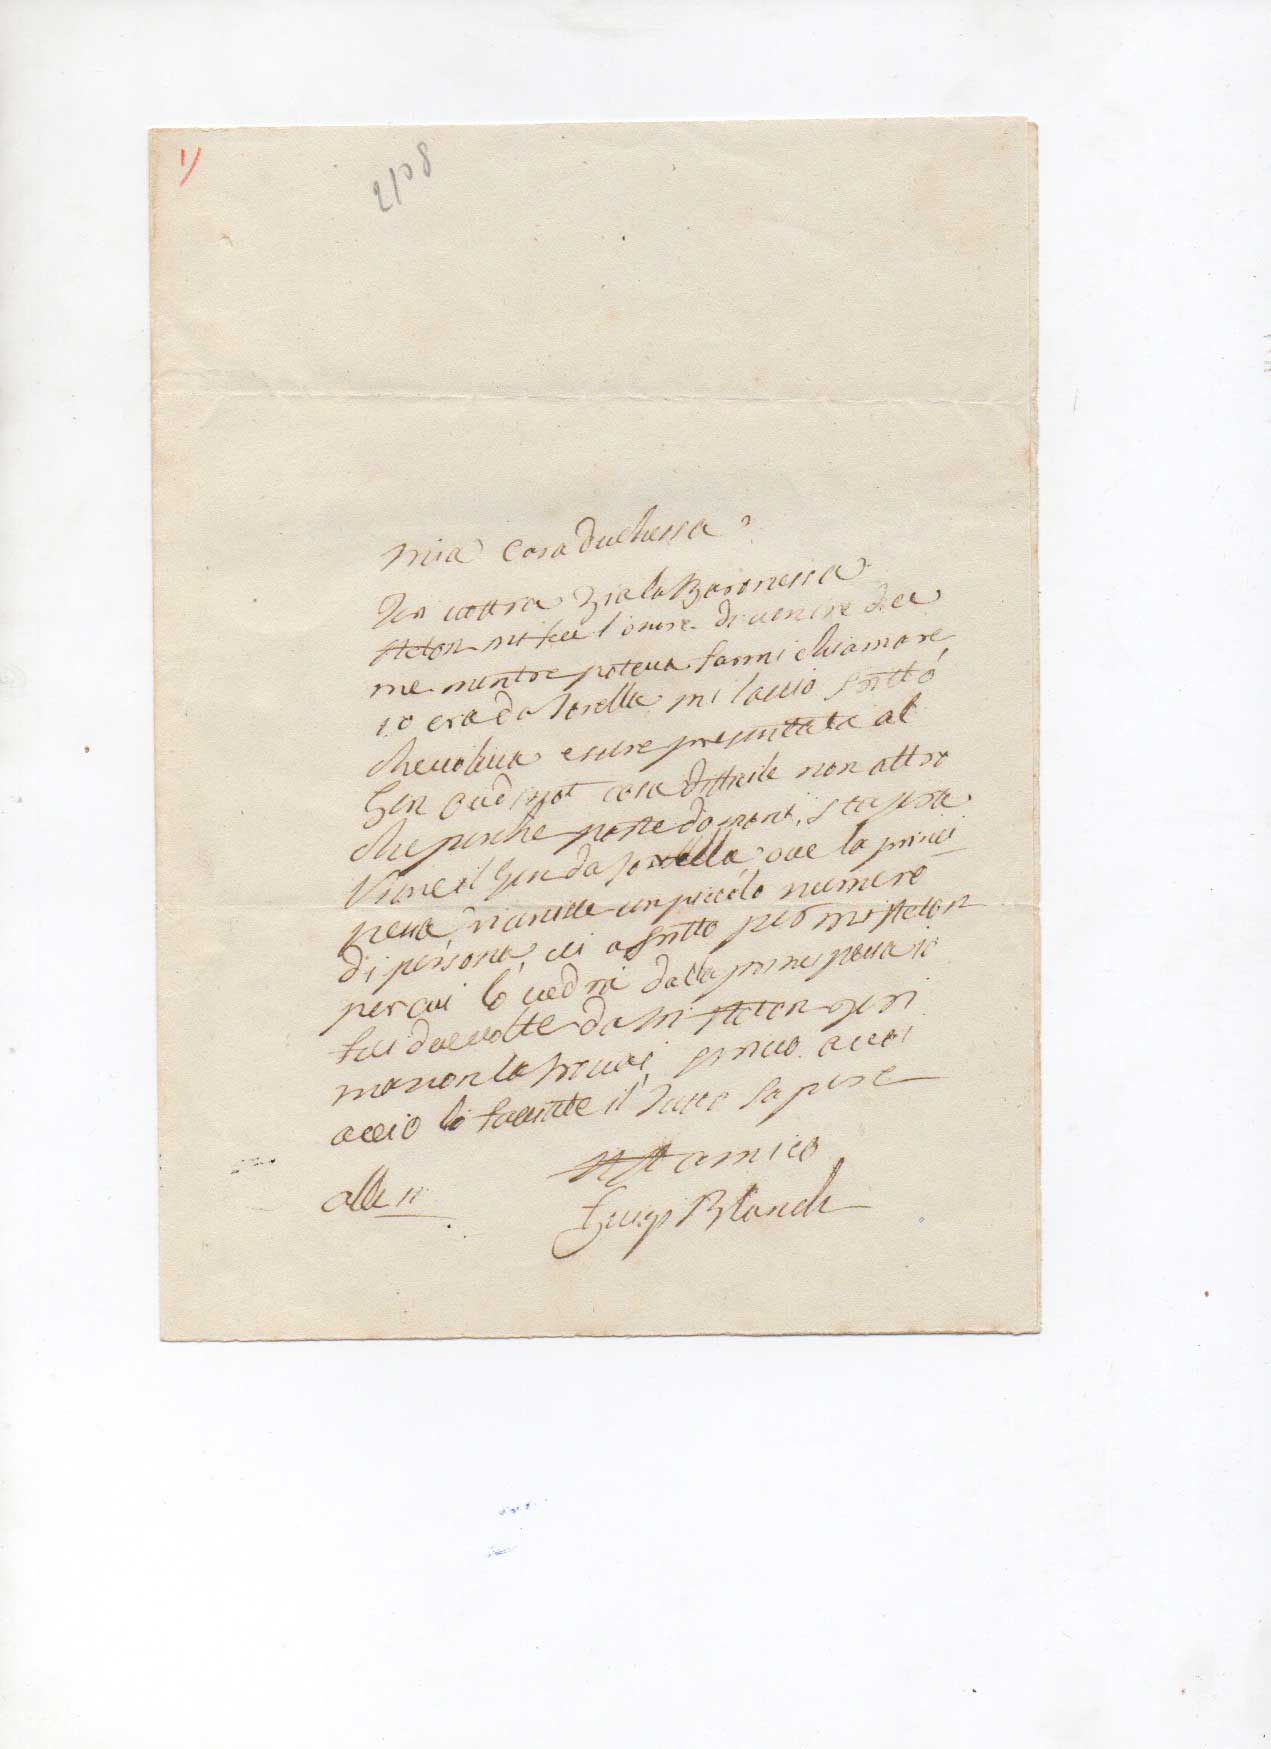 lettera autografa firmata inviata alla duchessa di satriano. non datata.